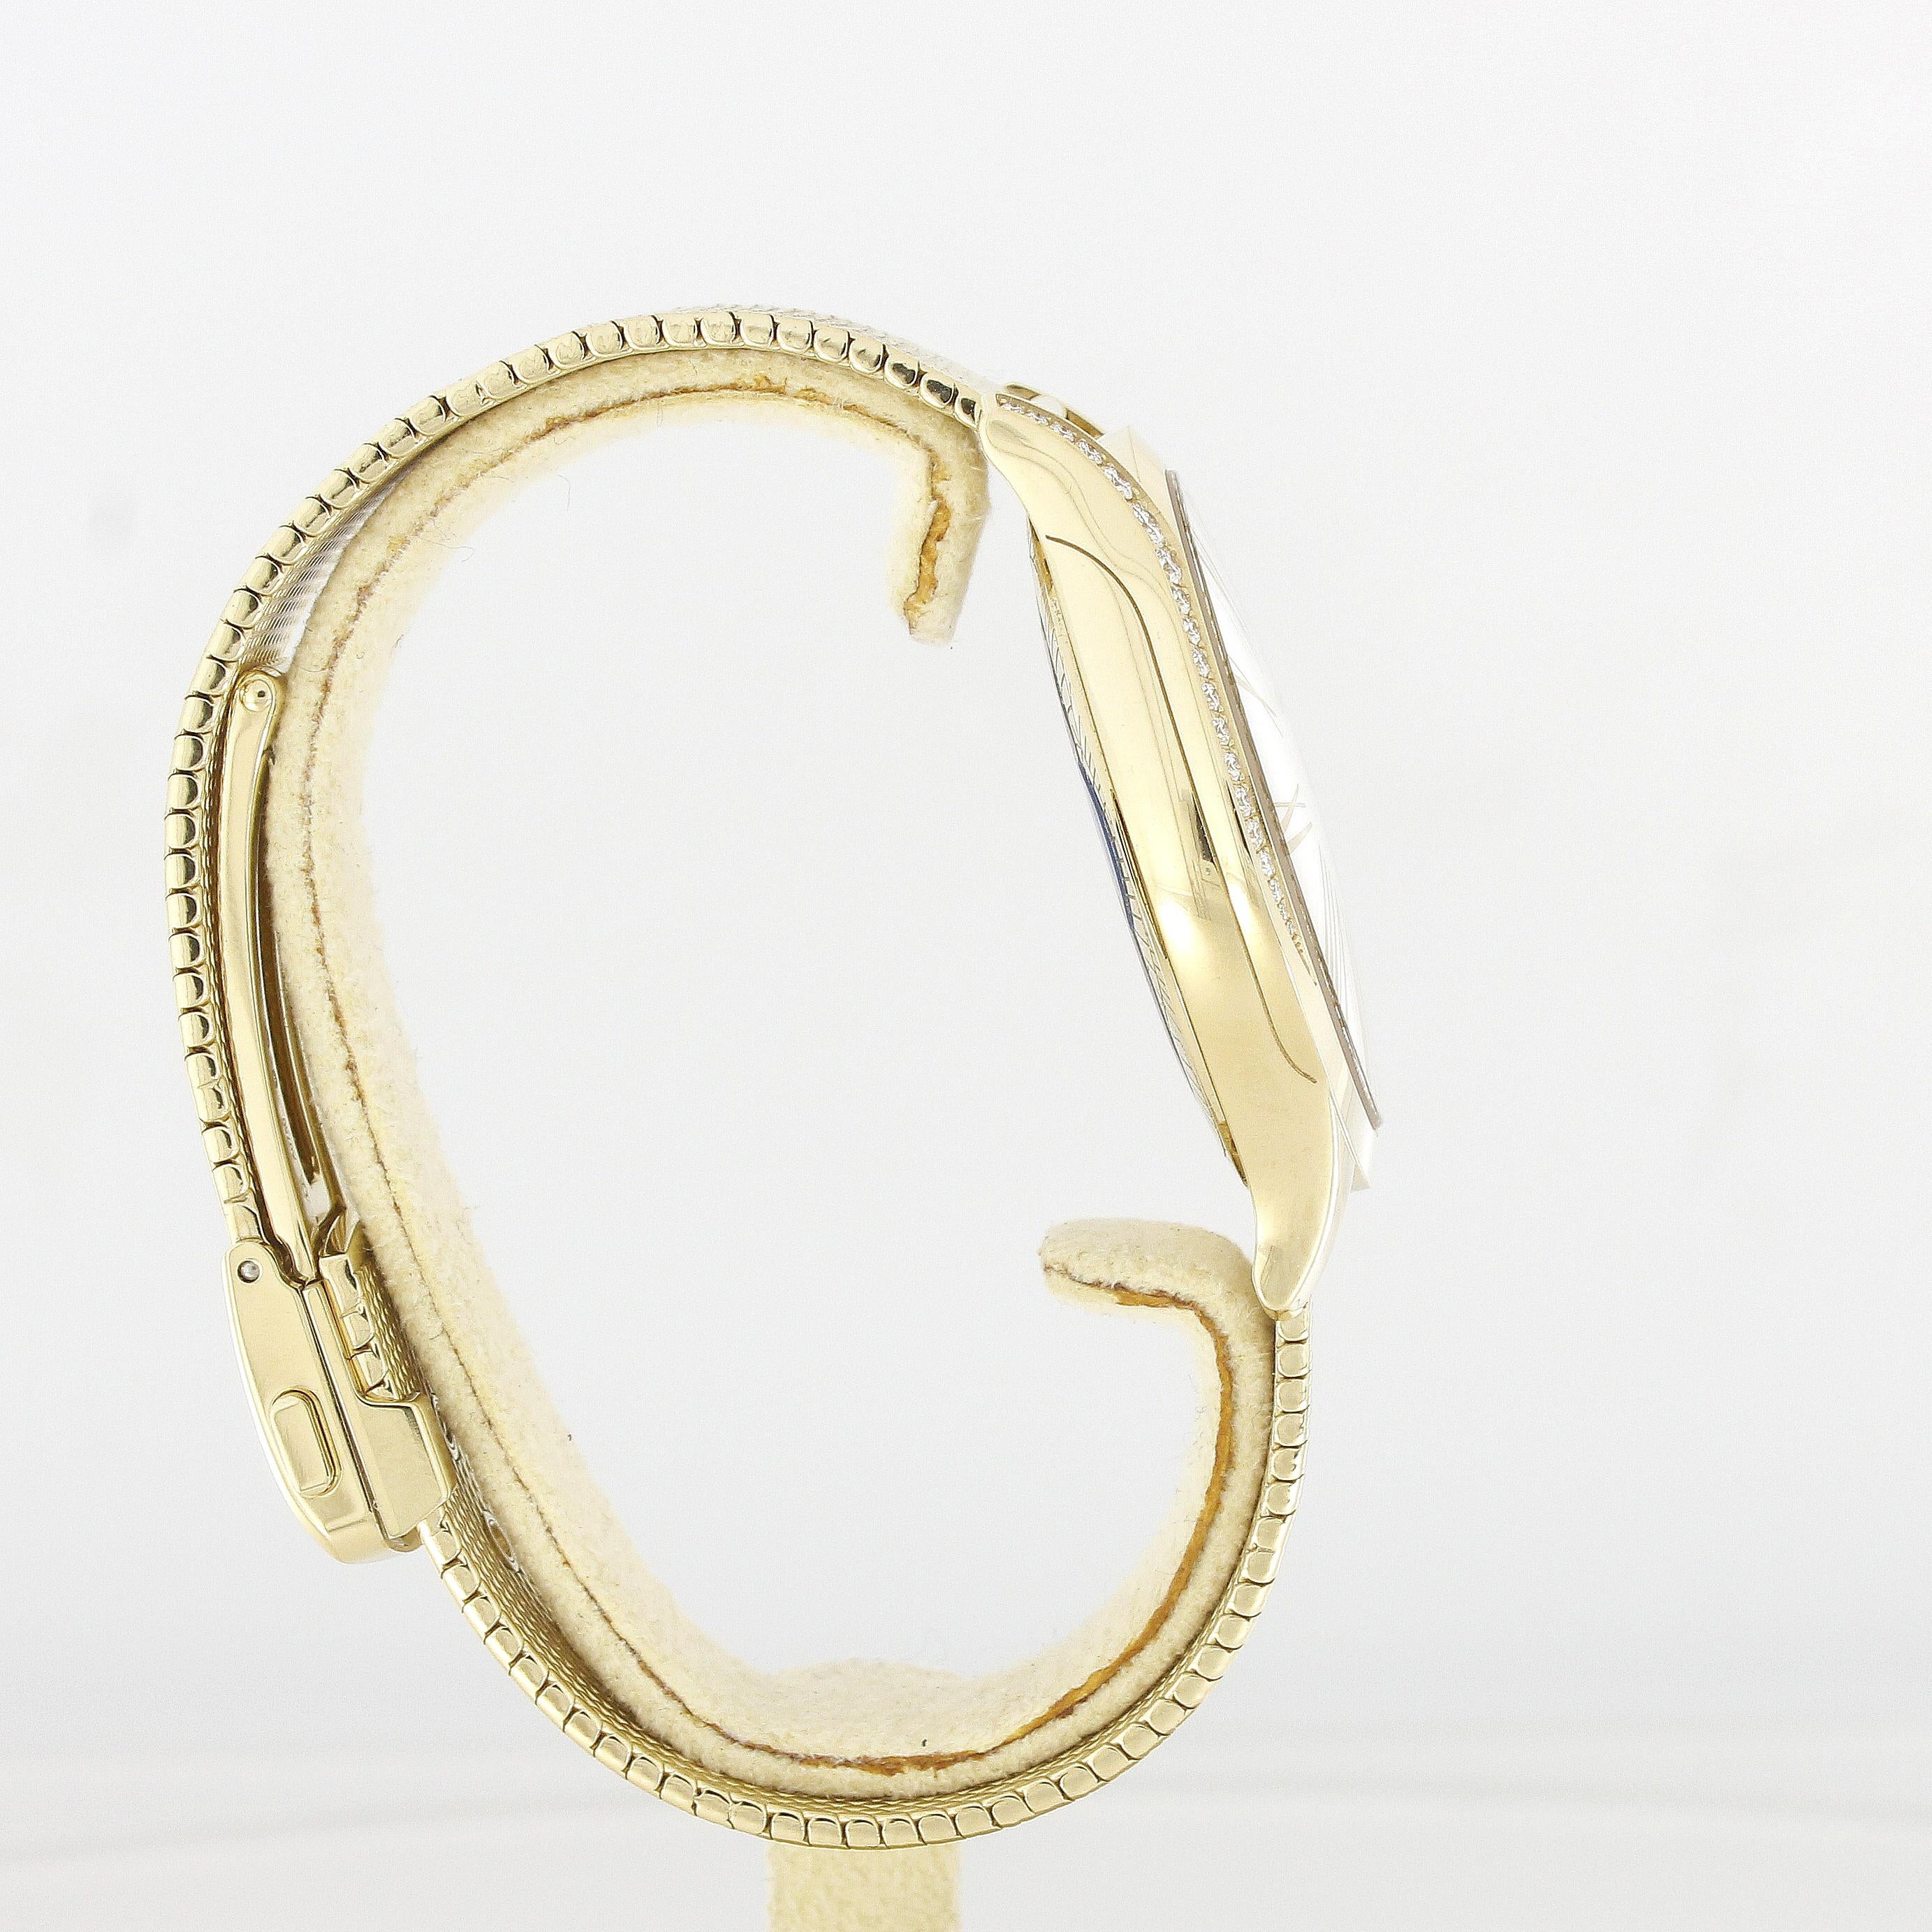 Brilliant Cut Omega De Ville Trésor Ladies Wristwatch 428.55.36.60.99.002 Yellow Gold Diamonds For Sale